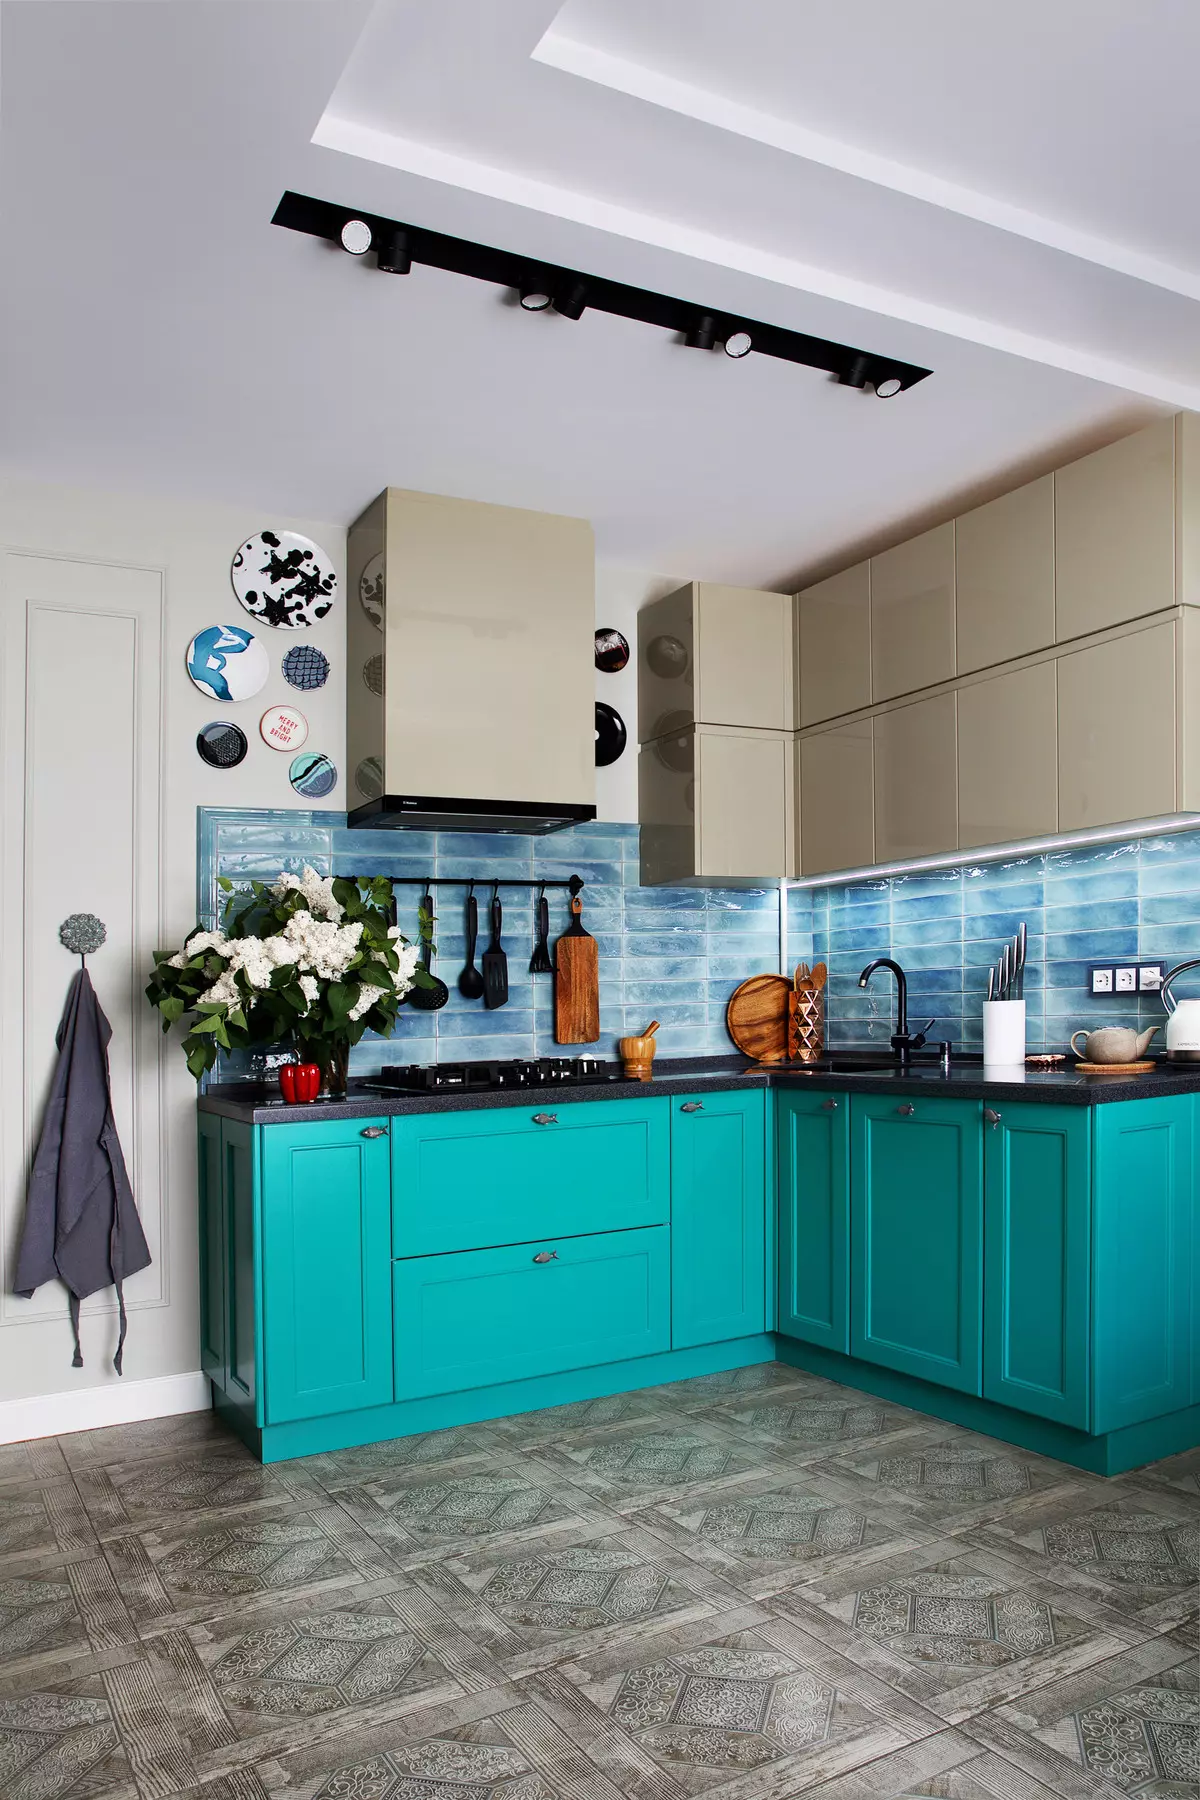 藍廚房（82張照片）：在藍色廚房套裝內部合併哪種顏色？淺藍色和深藍色色調的廚房設計 9555_28